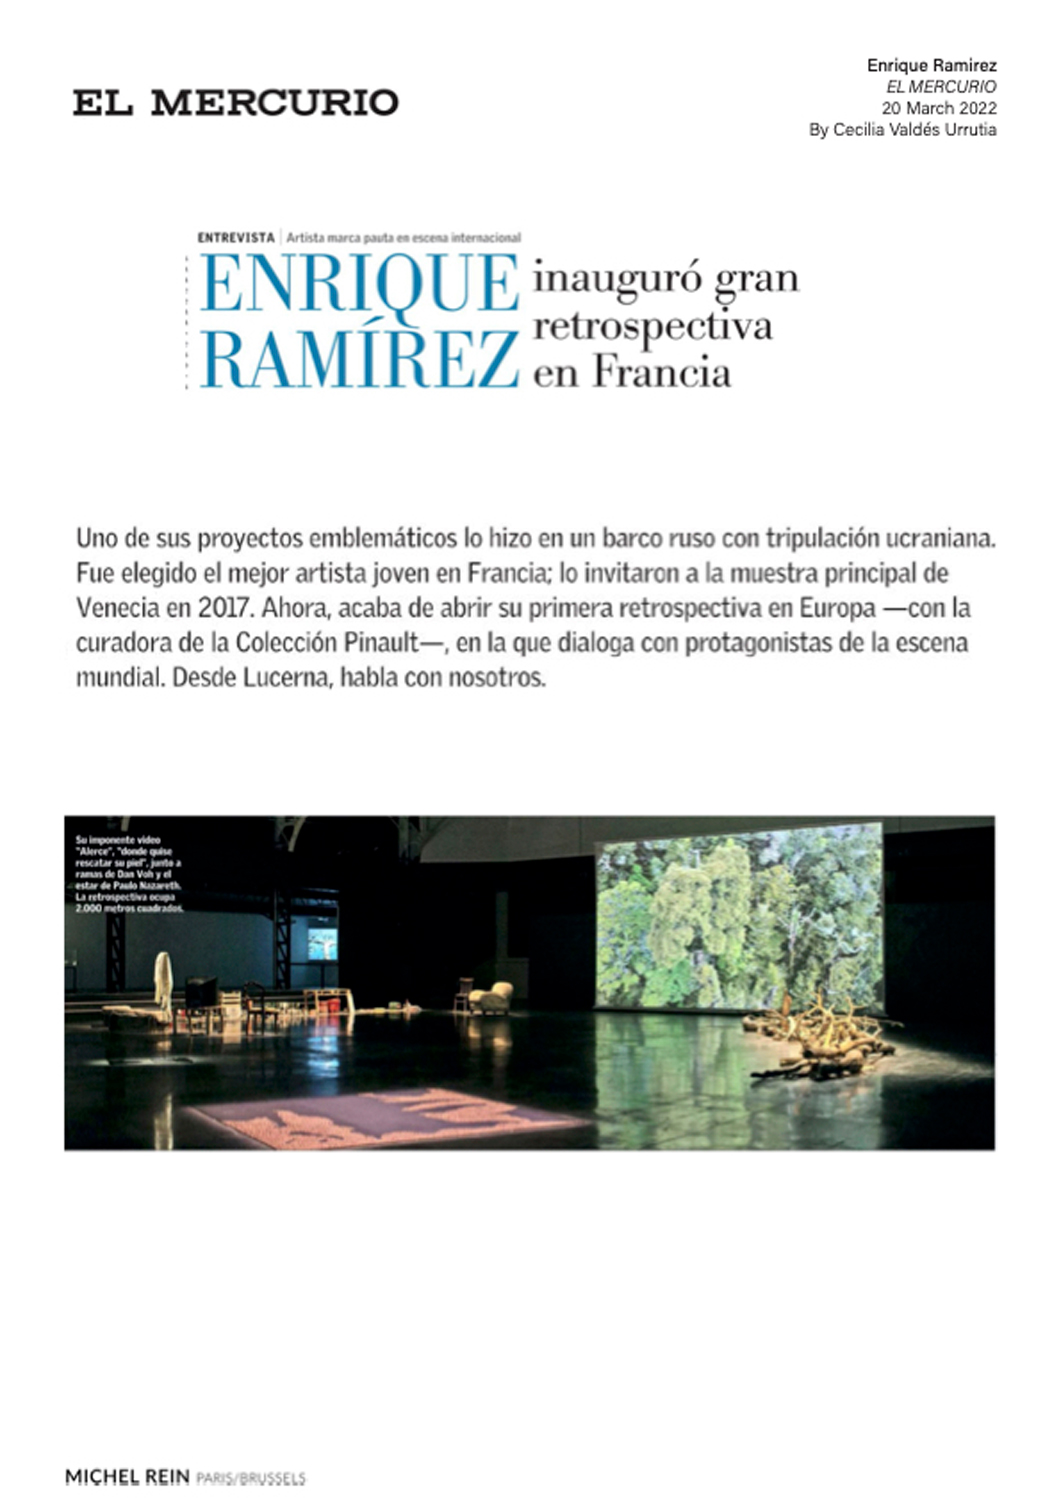 ENRIQUE RAMIREZ inauguró gran retrospectiva en Francia - EL MERCURIO